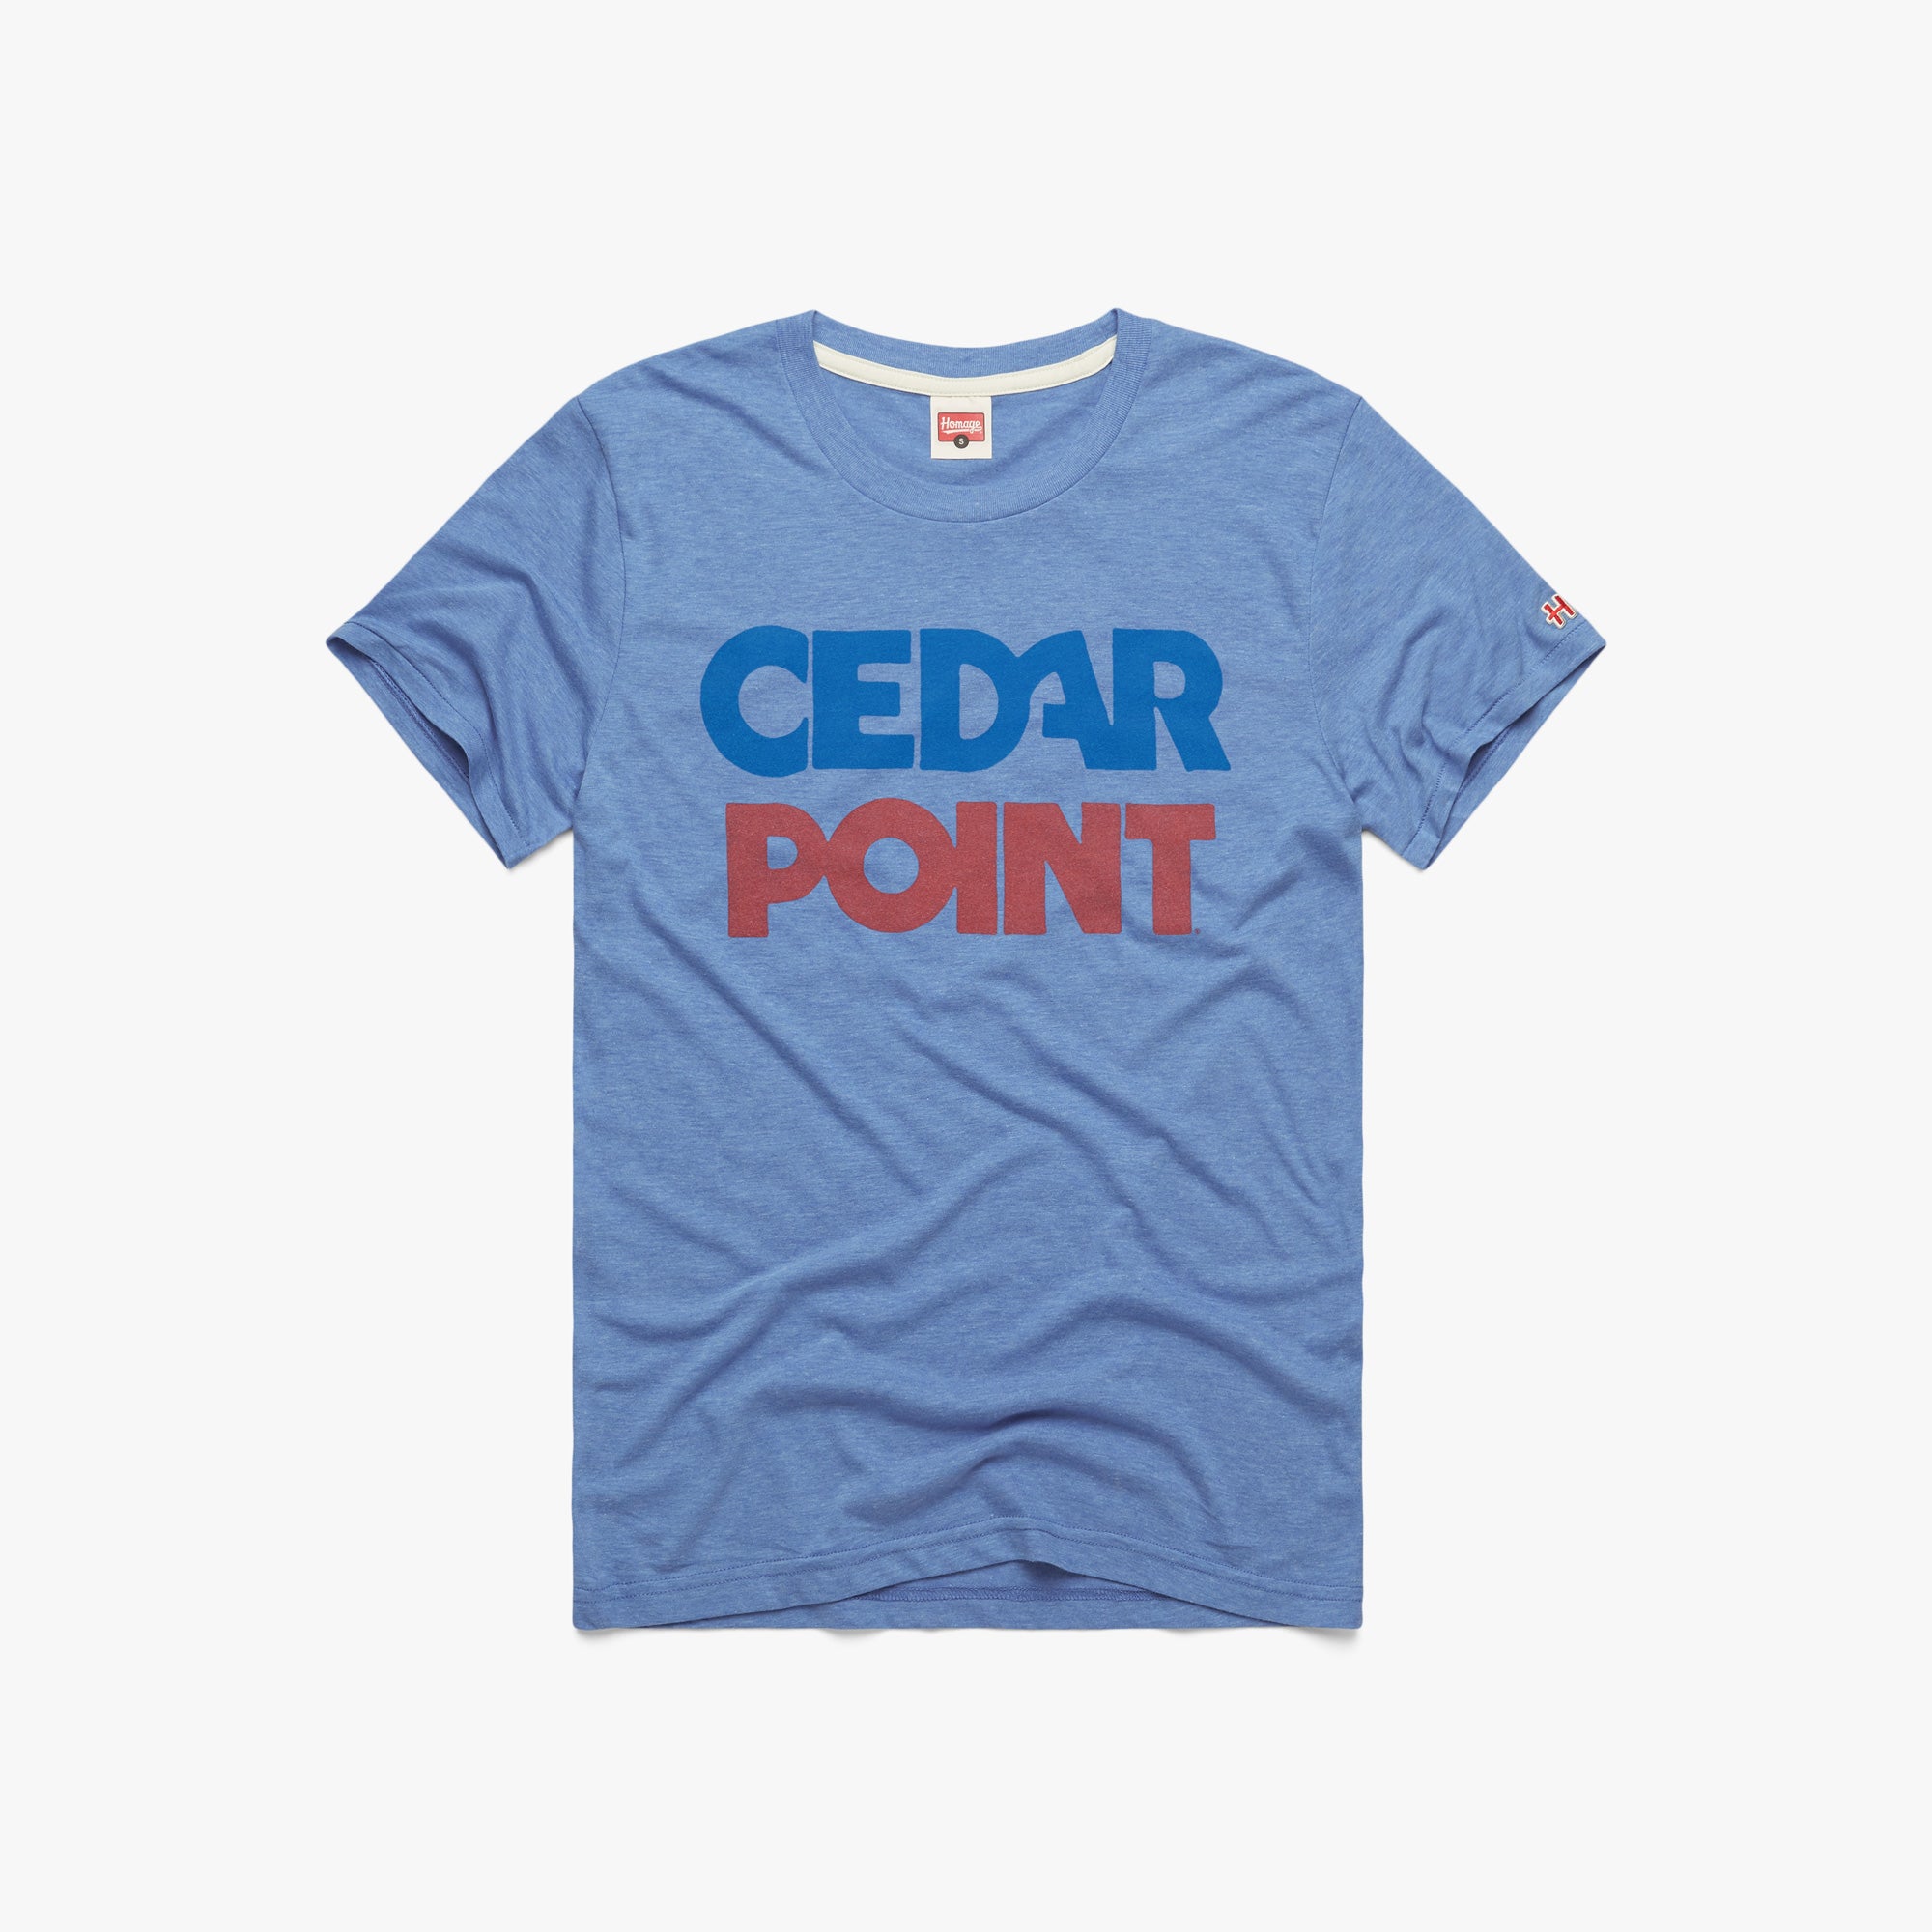 Cedar Point Roller Coaster Designer Classic T-Shirt Leggings for